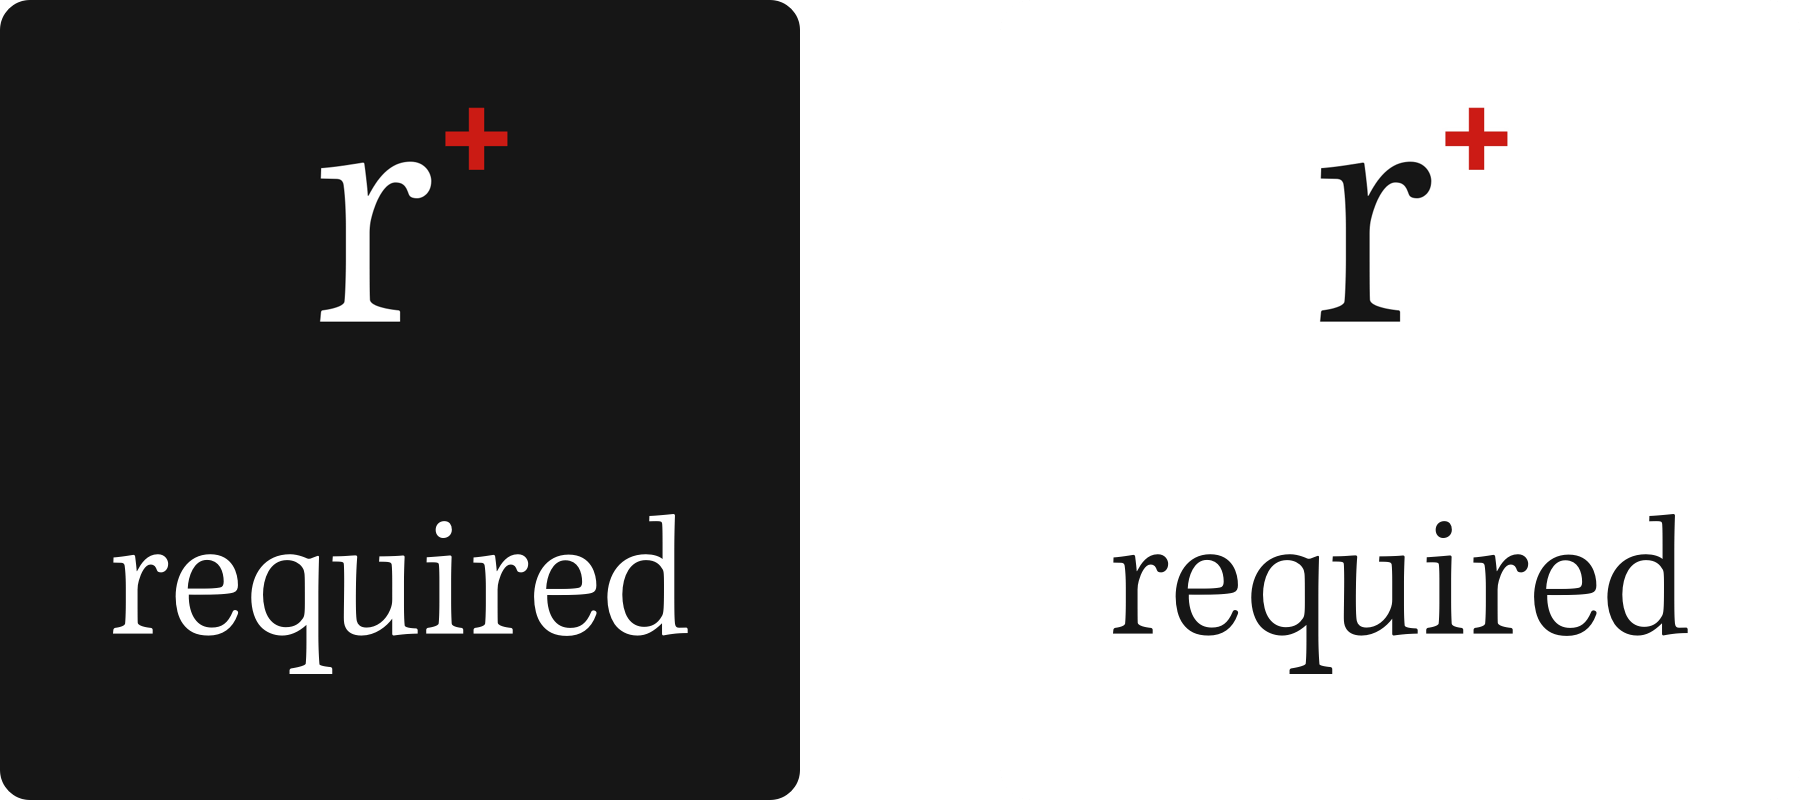 Das alte required-Logo mit der "r+" Variante.